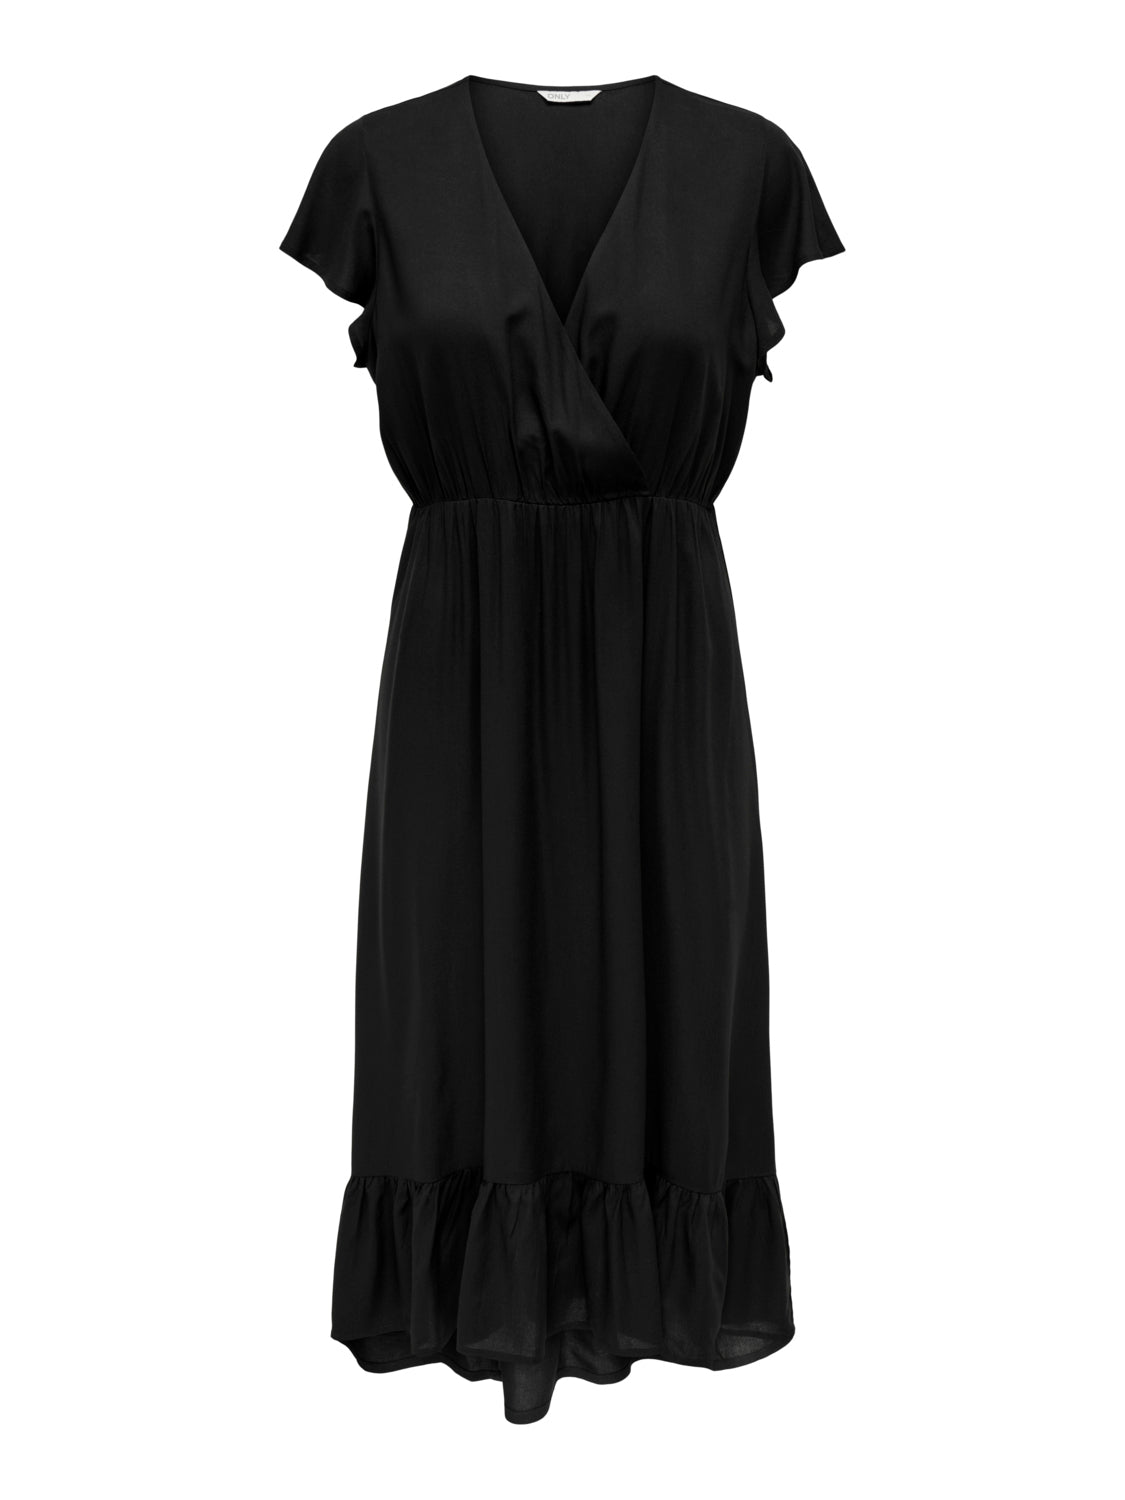 PGTAMARA Dress - Black